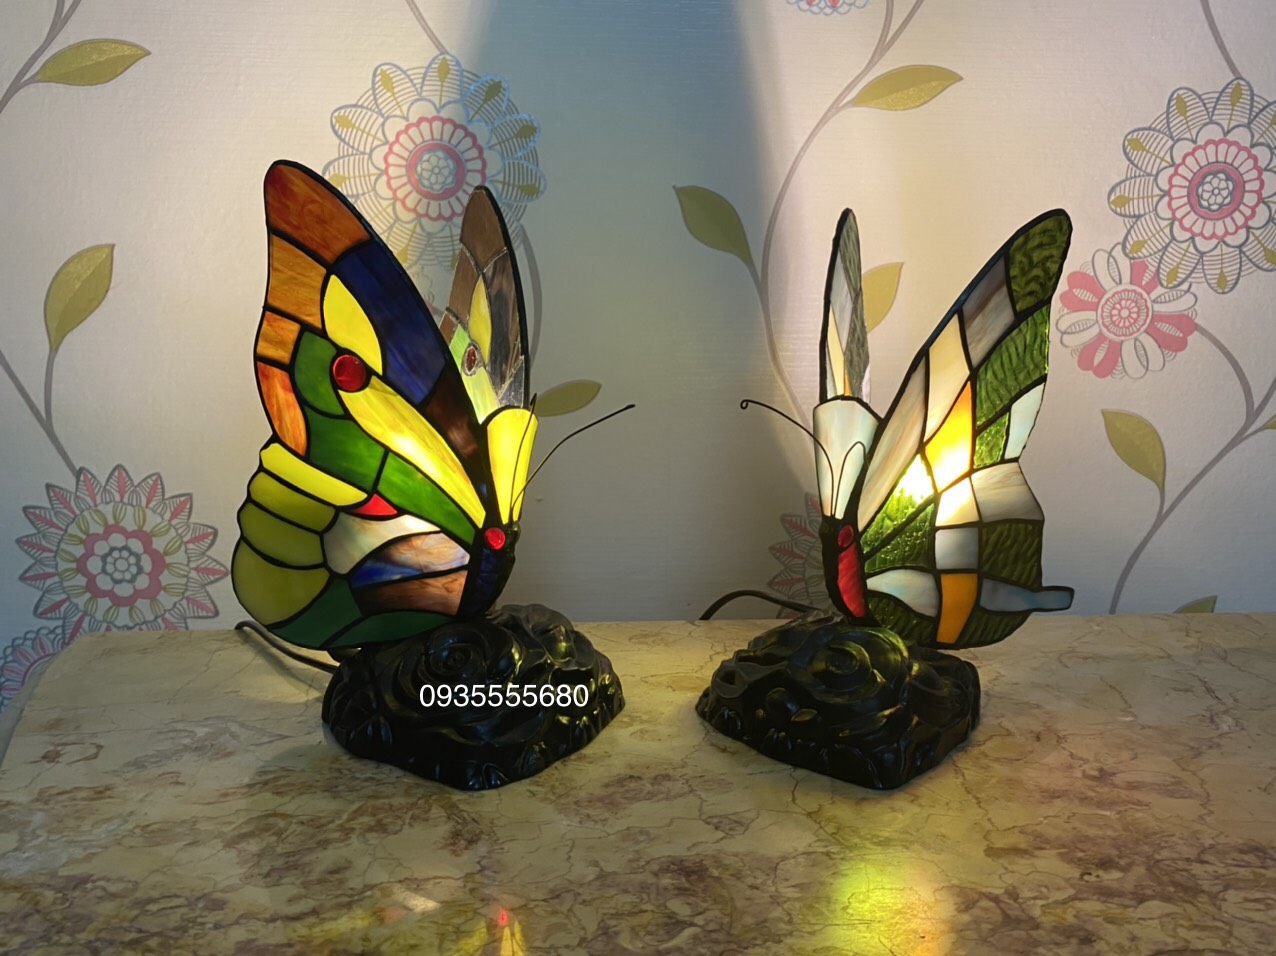 Giao lưu đôi đèn ngủ hình bướm